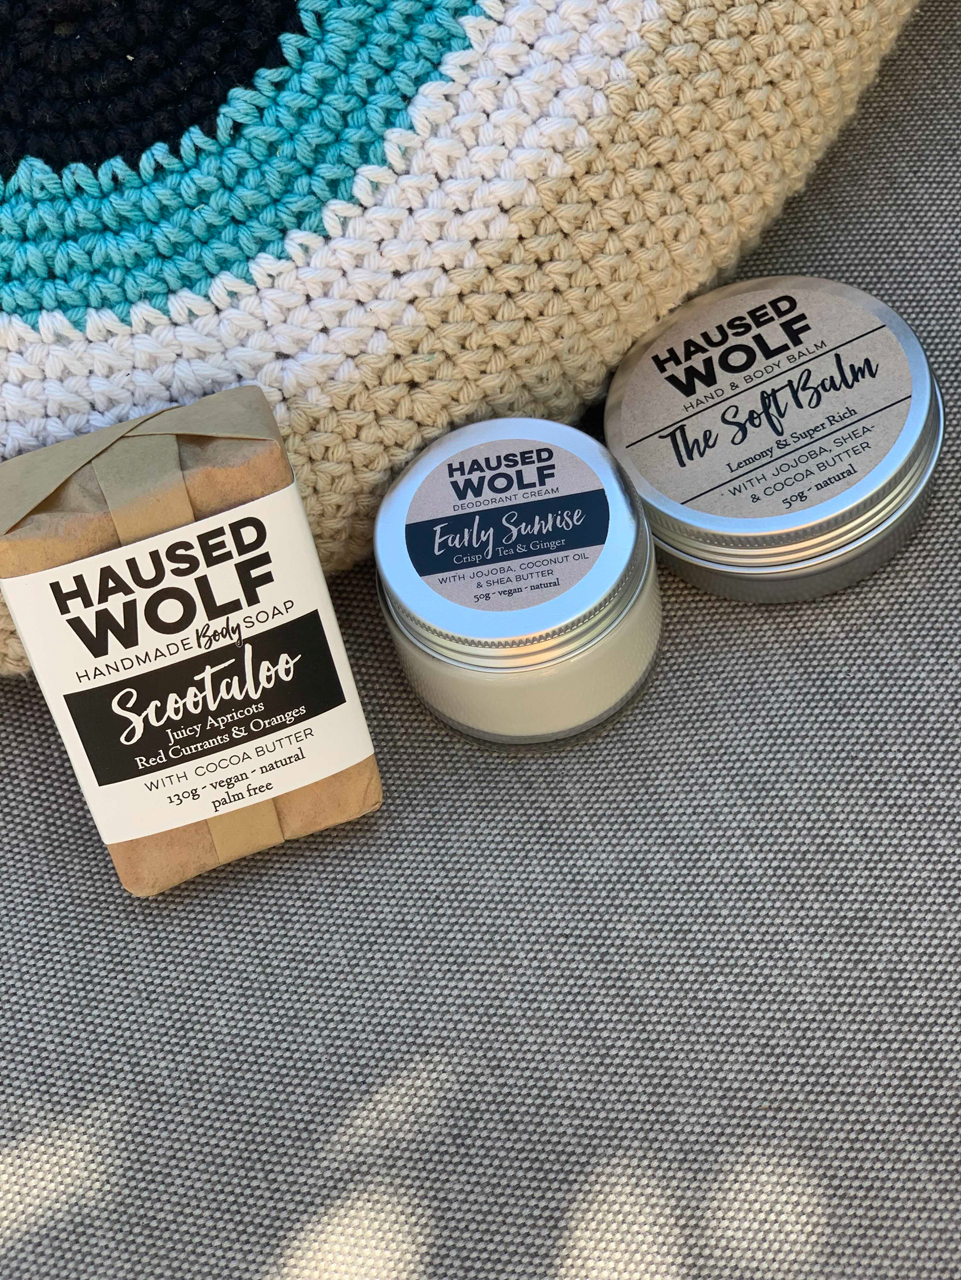 Duschseife, Haarseife und Co.von Haused Wolf